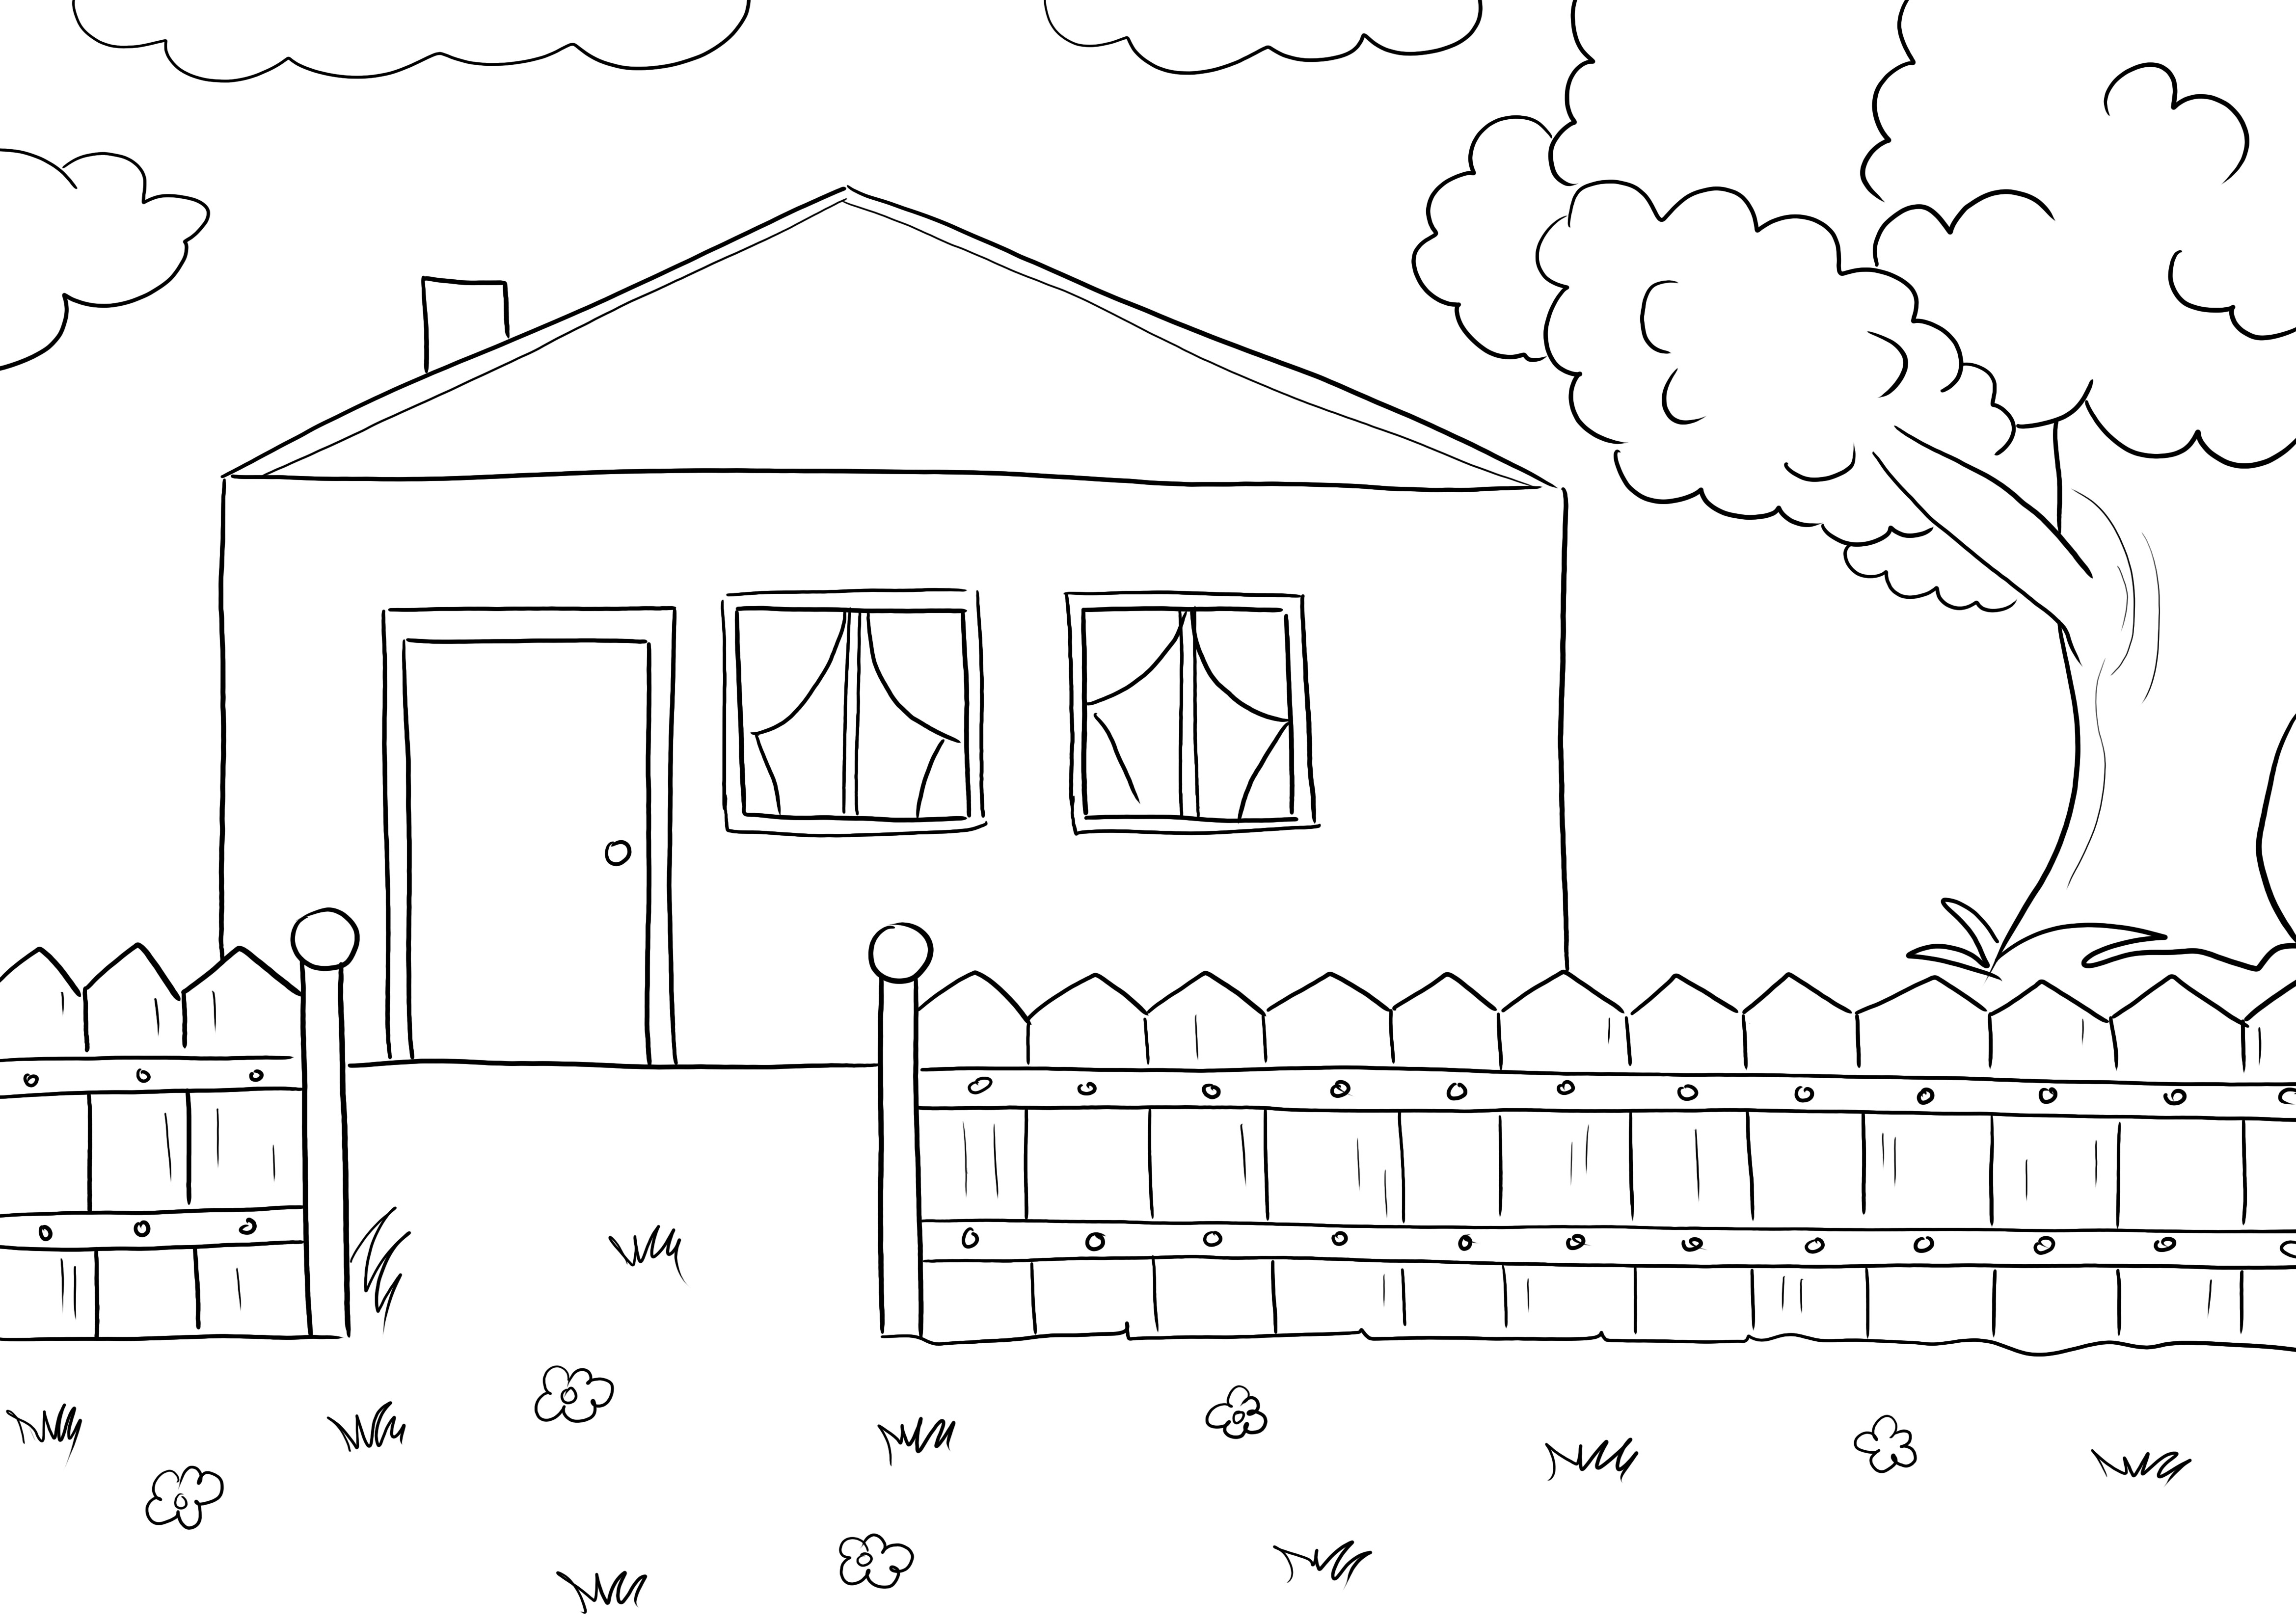 Çocuklar için çizmesi kolay bir Kır Evi'nin en iyi ücretsiz boyama resmi